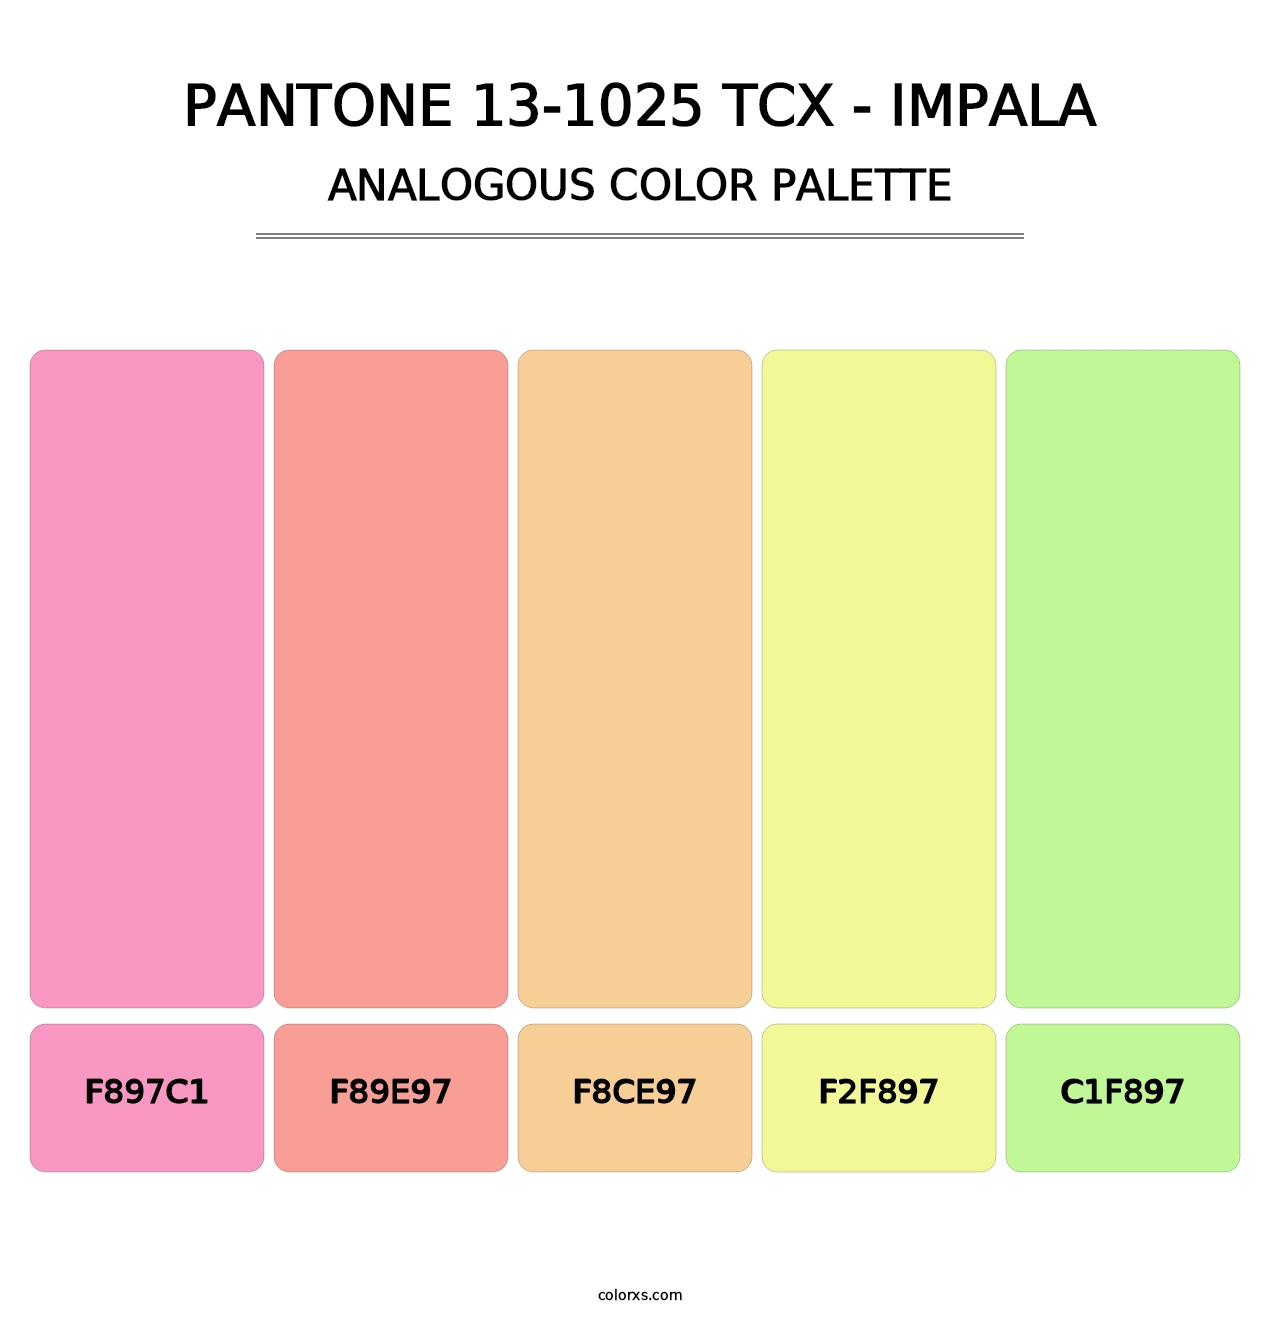 PANTONE 13-1025 TCX - Impala - Analogous Color Palette